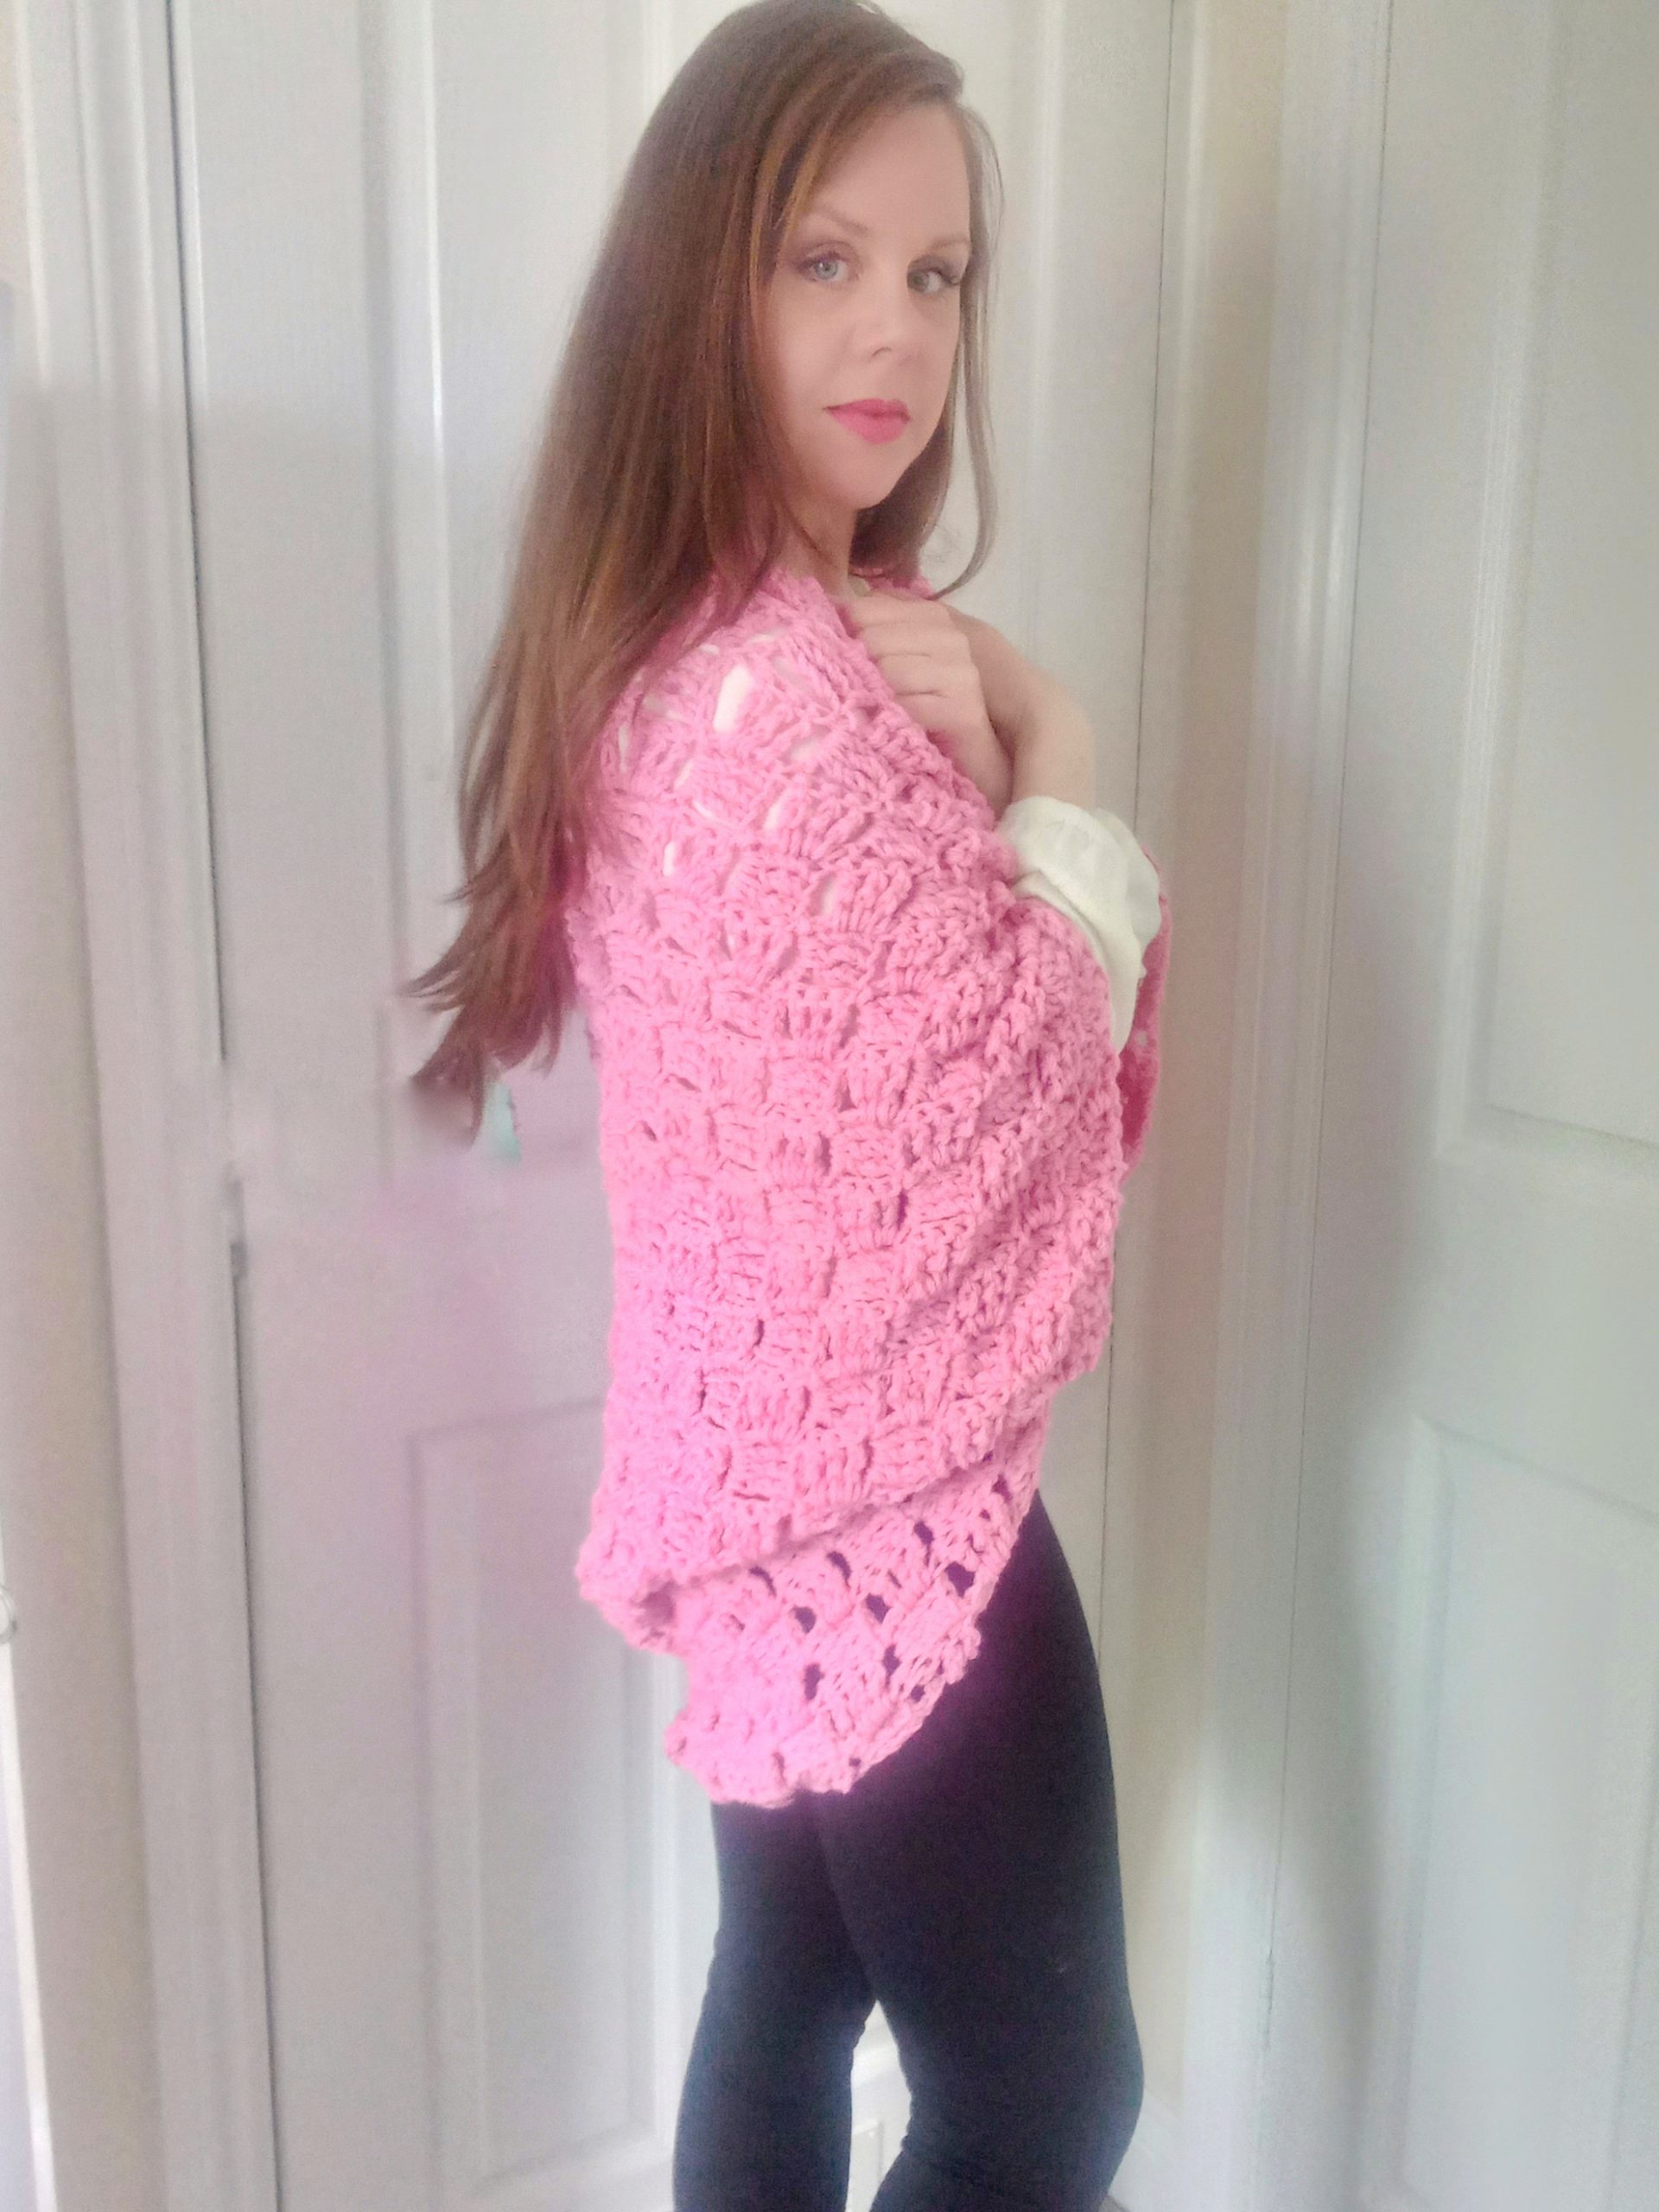 Crochet The Lovely Pink Shrug